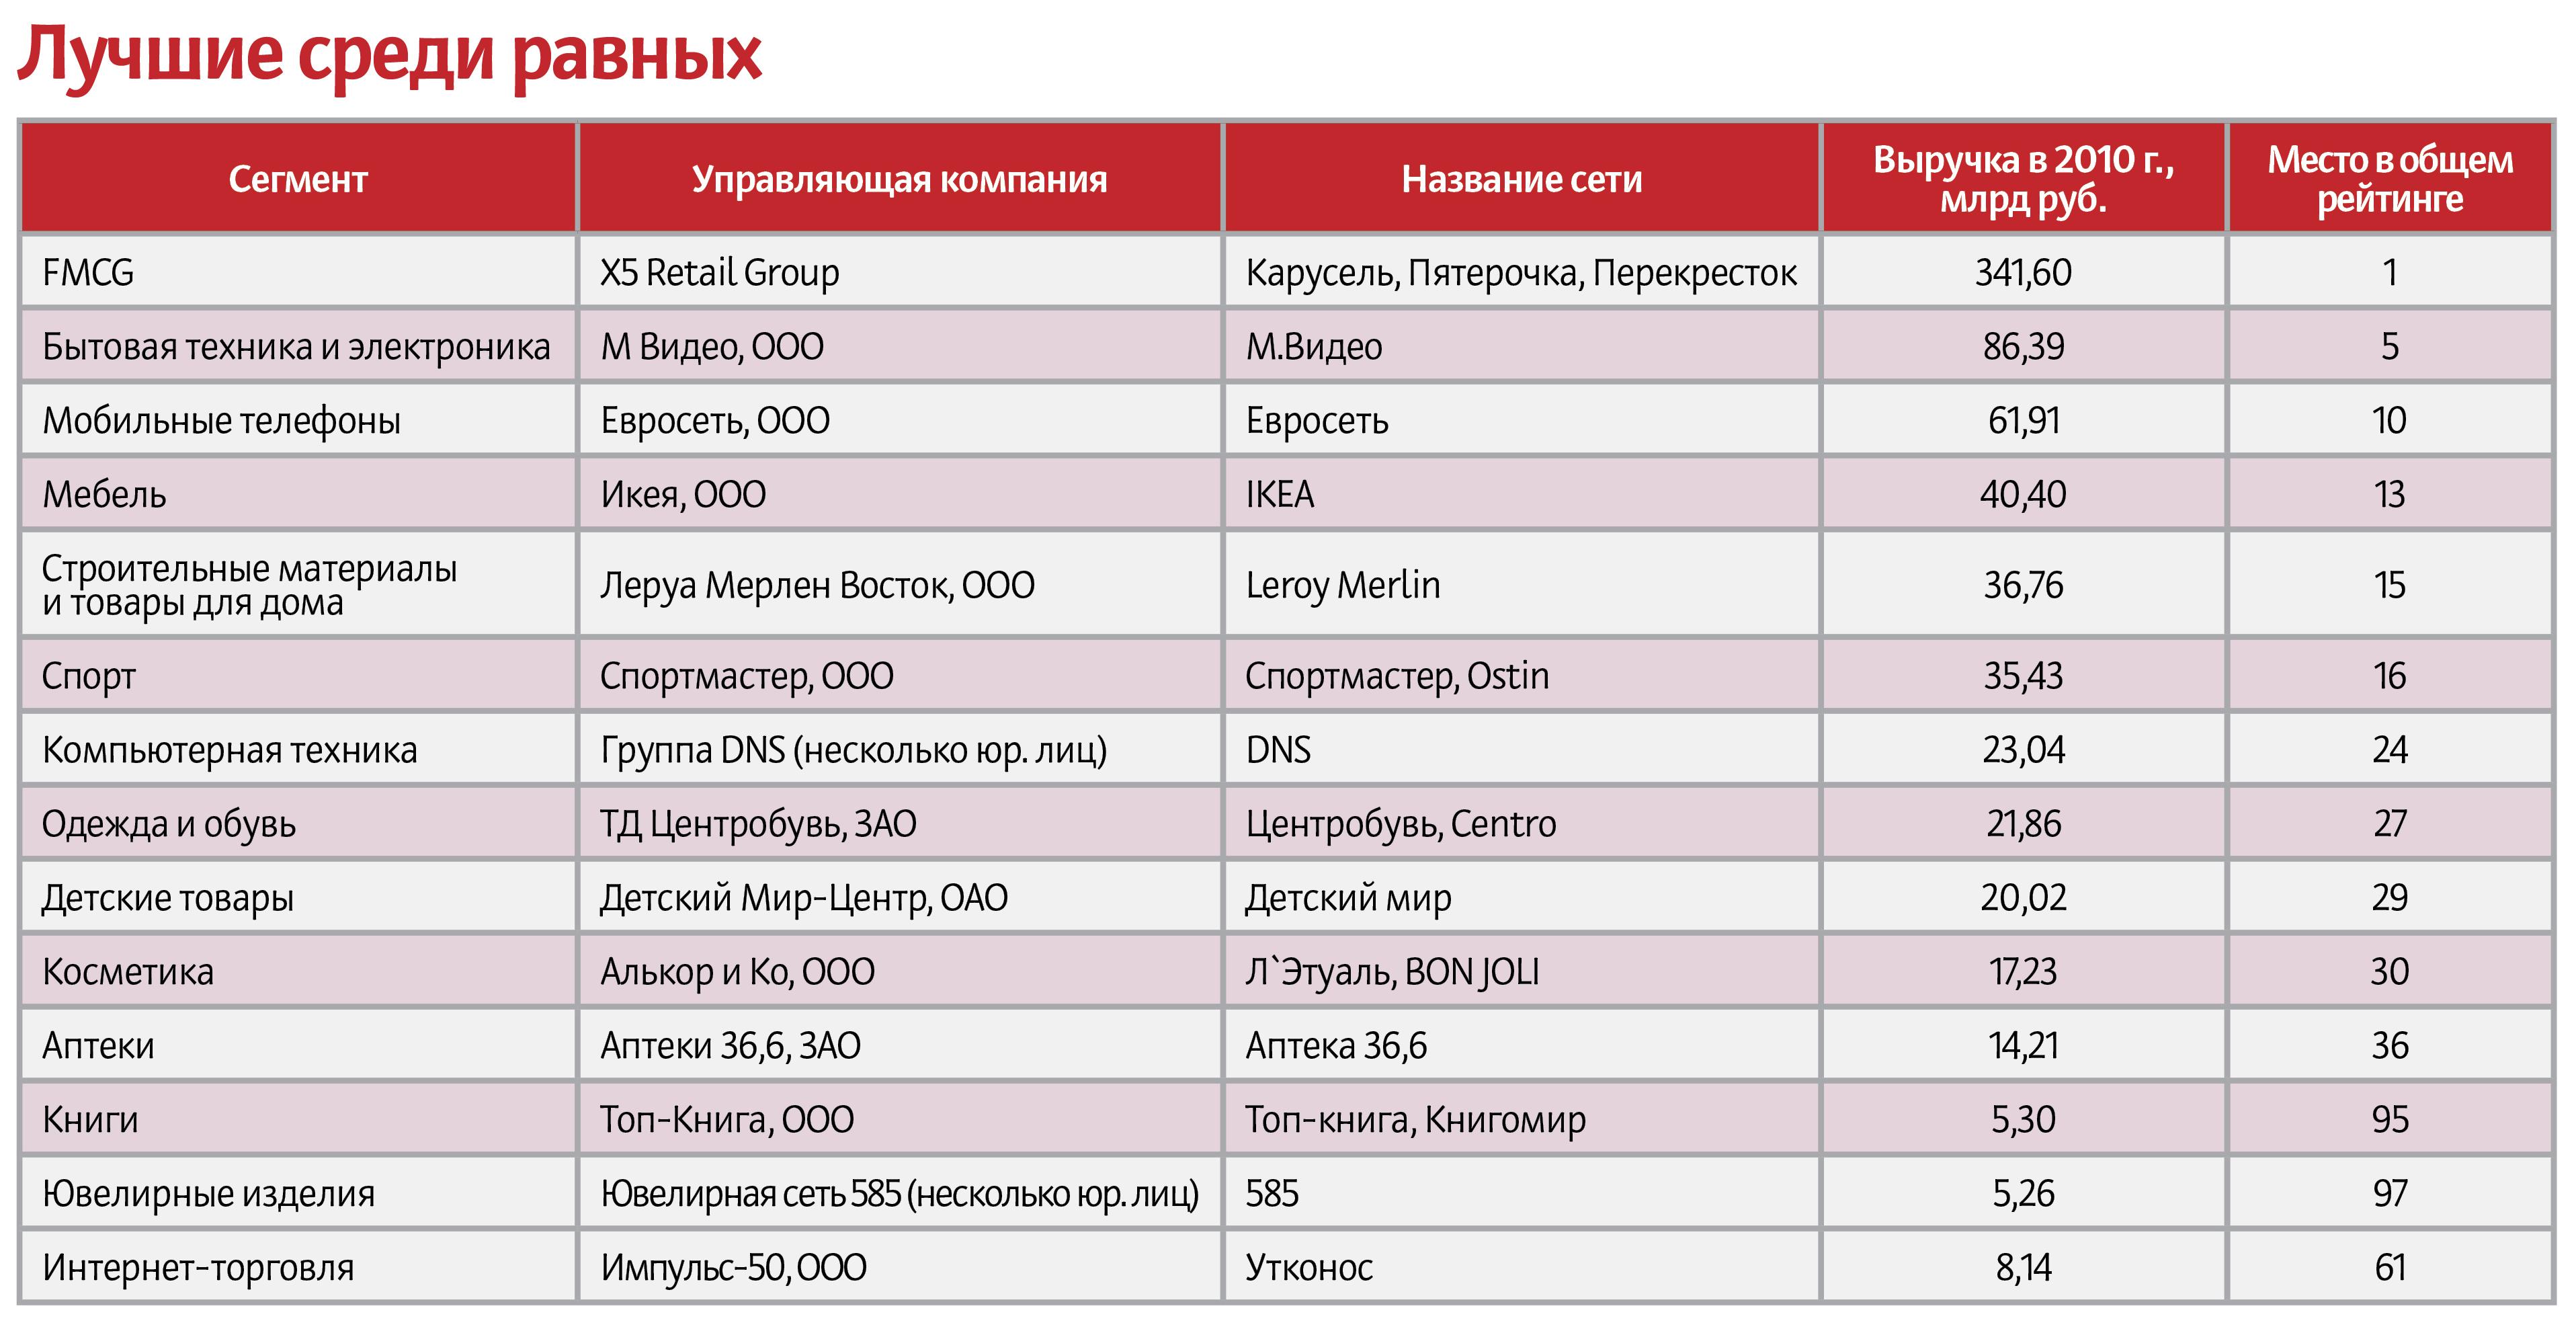 производители мебели в россии список